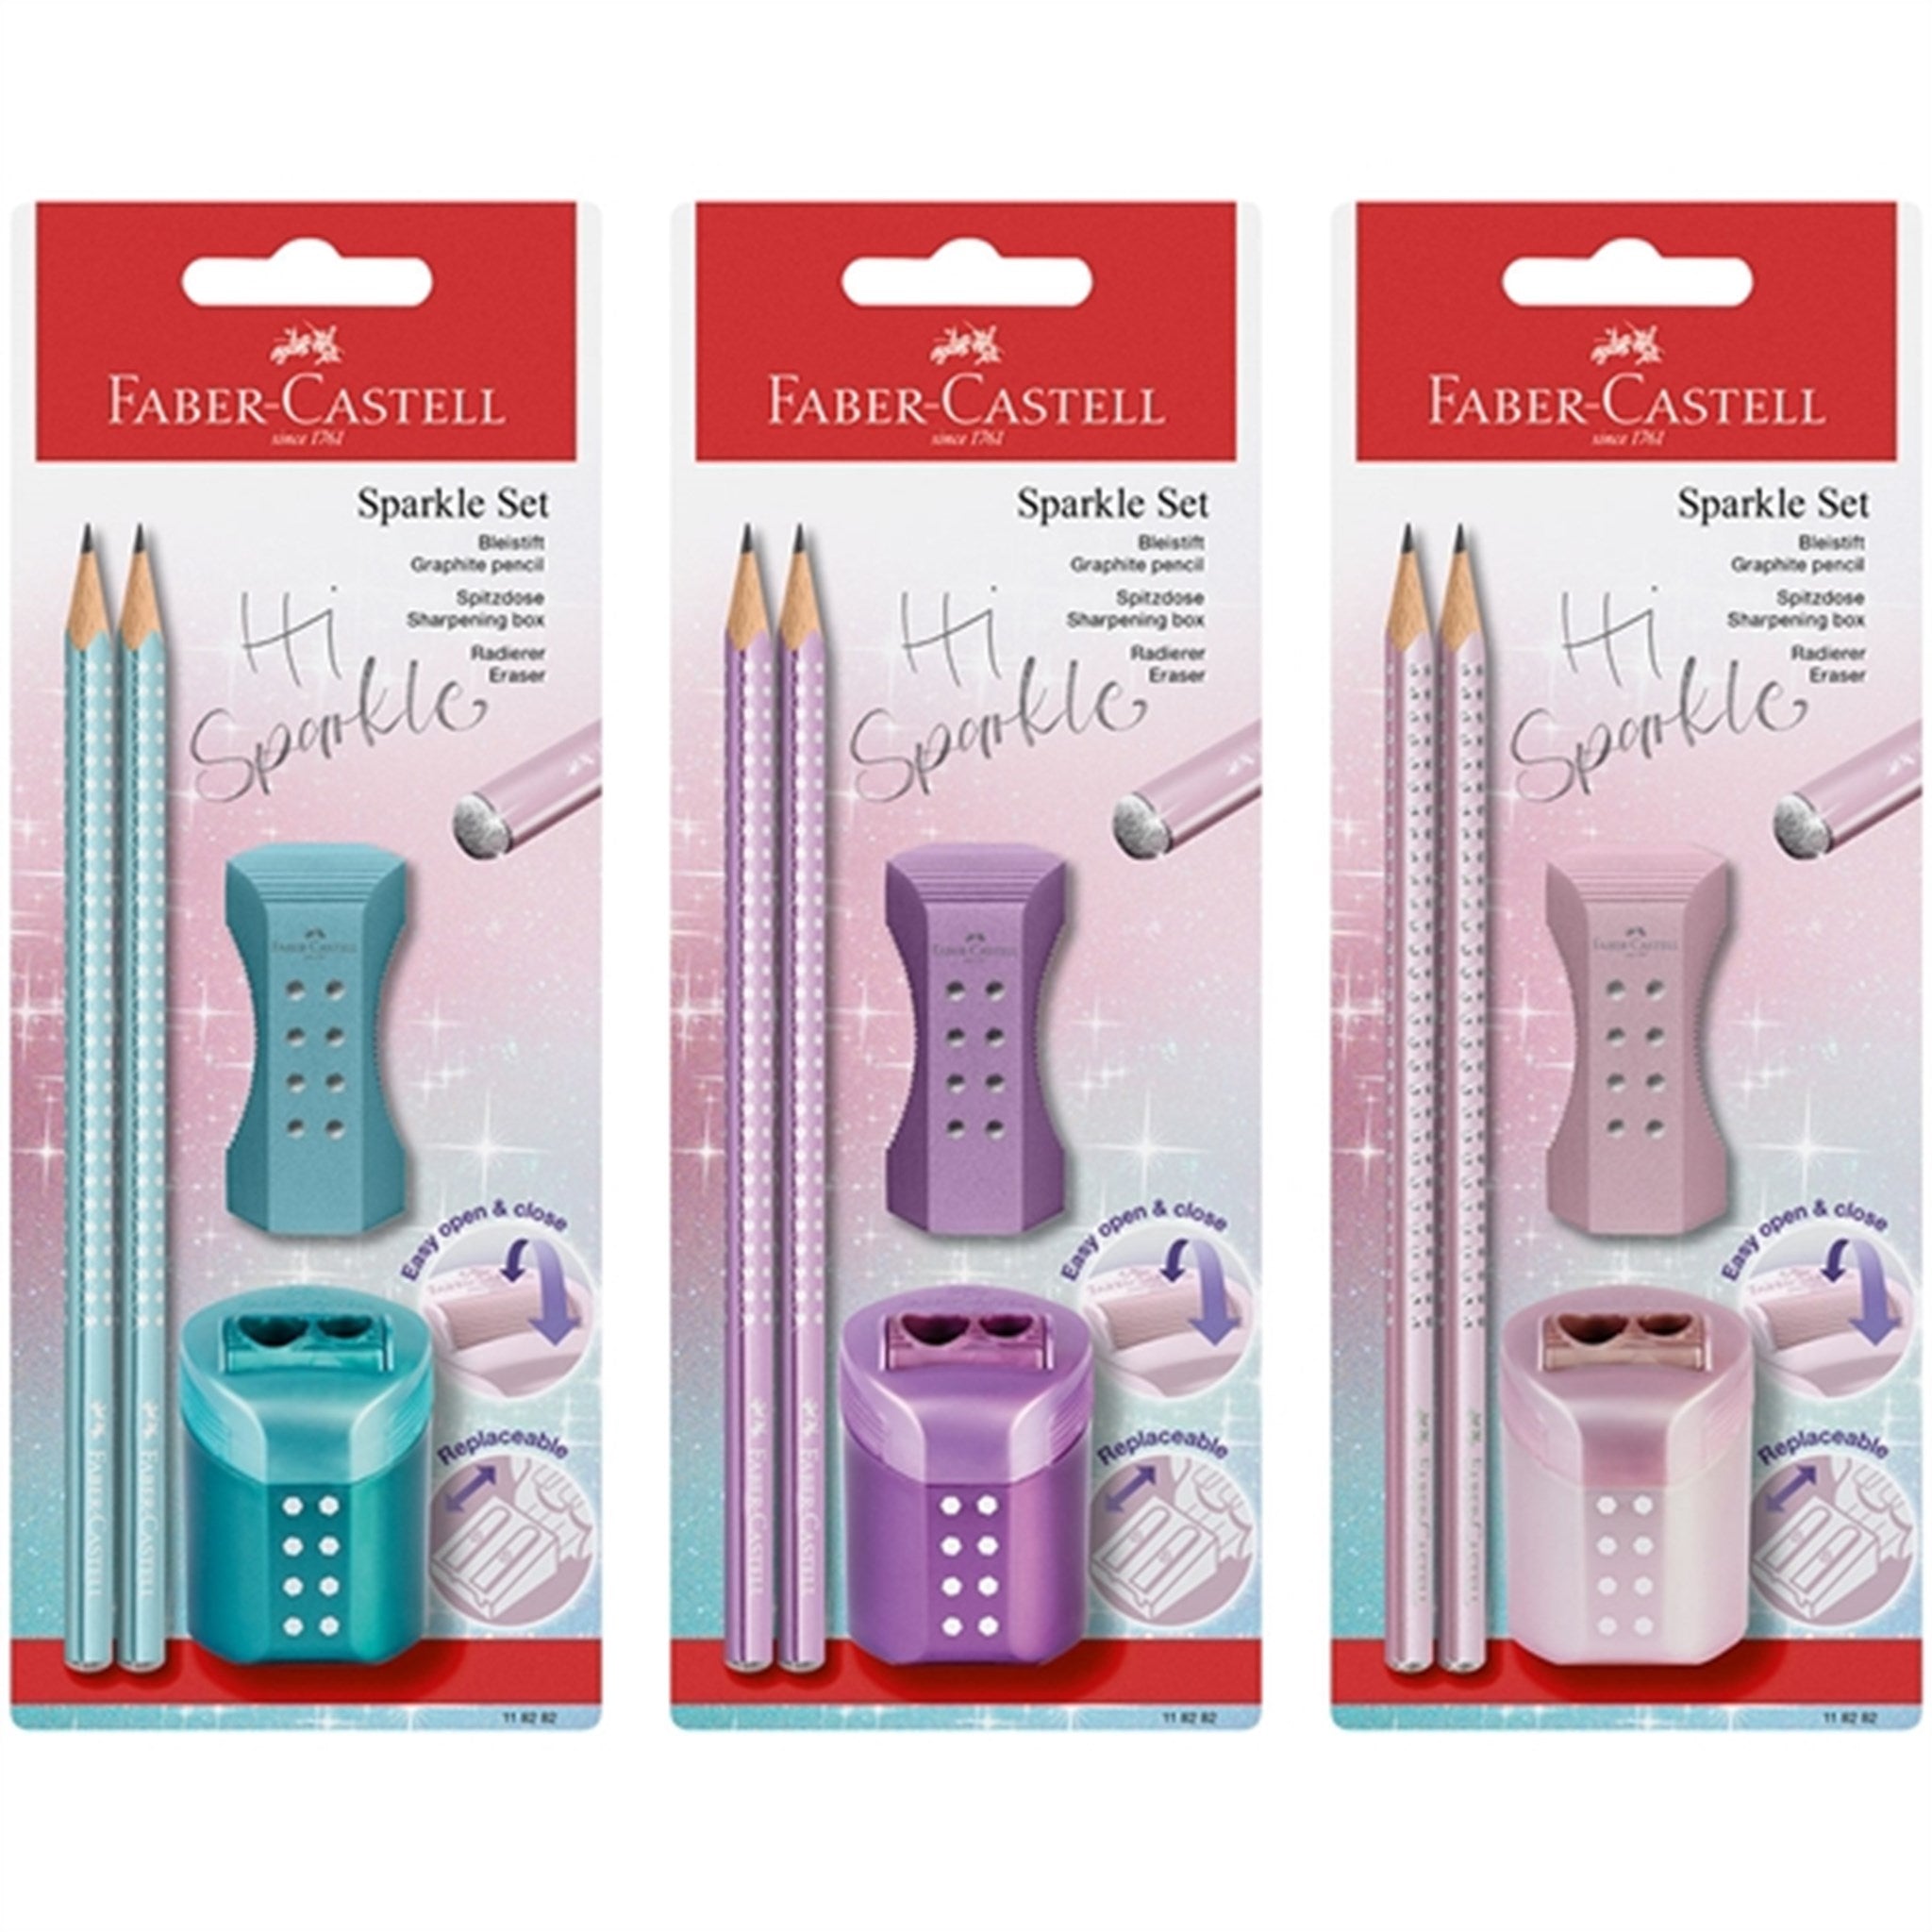 Faber-Castell Sparkle 2 Pencils, Eraser, Pencil Sharpener - Rosa 2